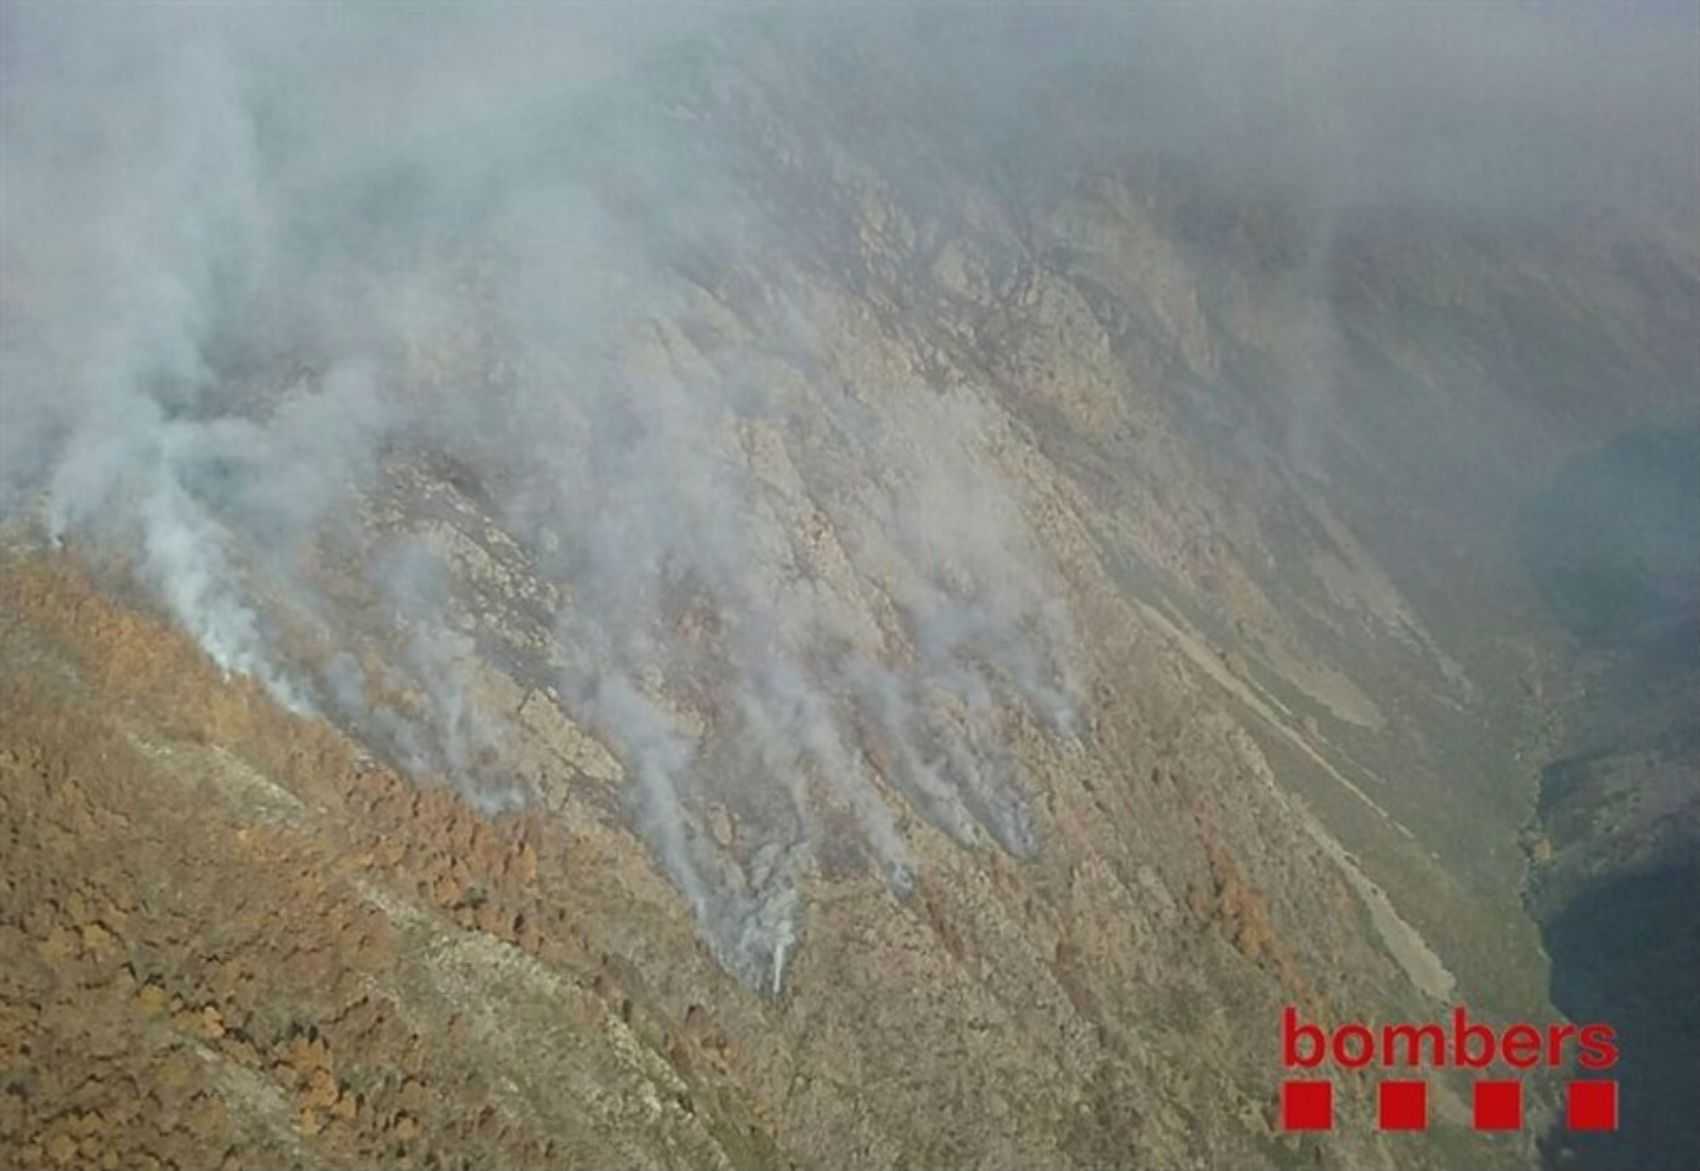 El fuego de La Guingueta d'Àneu ha quemado 440 hectáreas